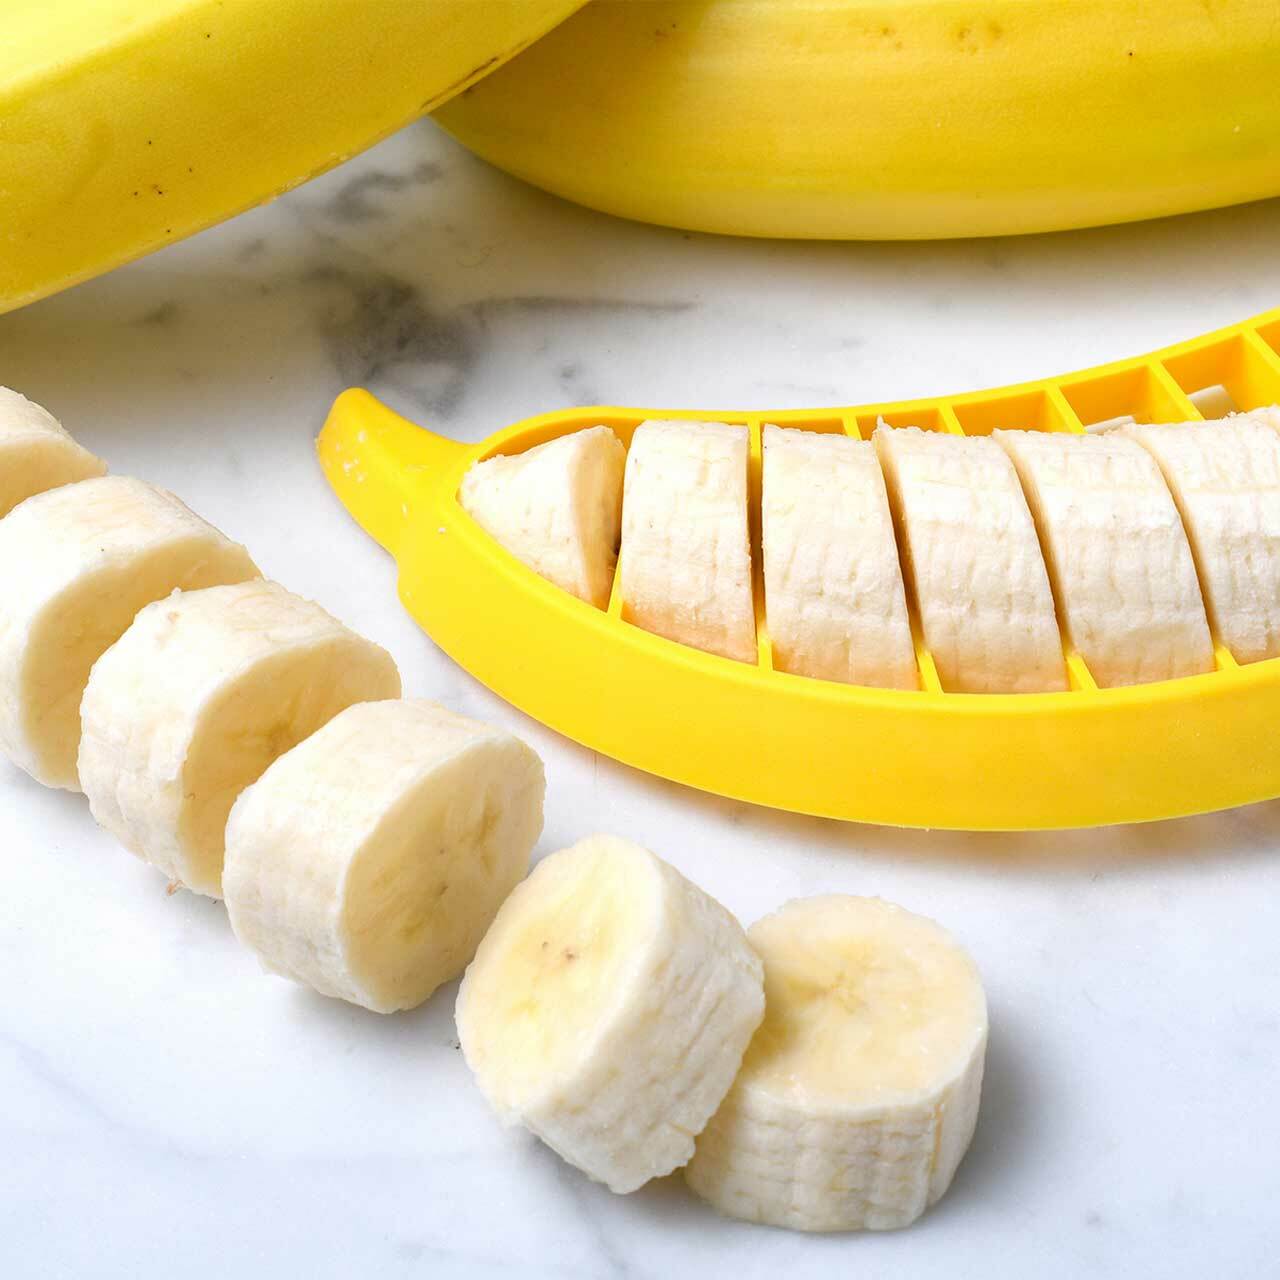 Hutzler Banana Slicer